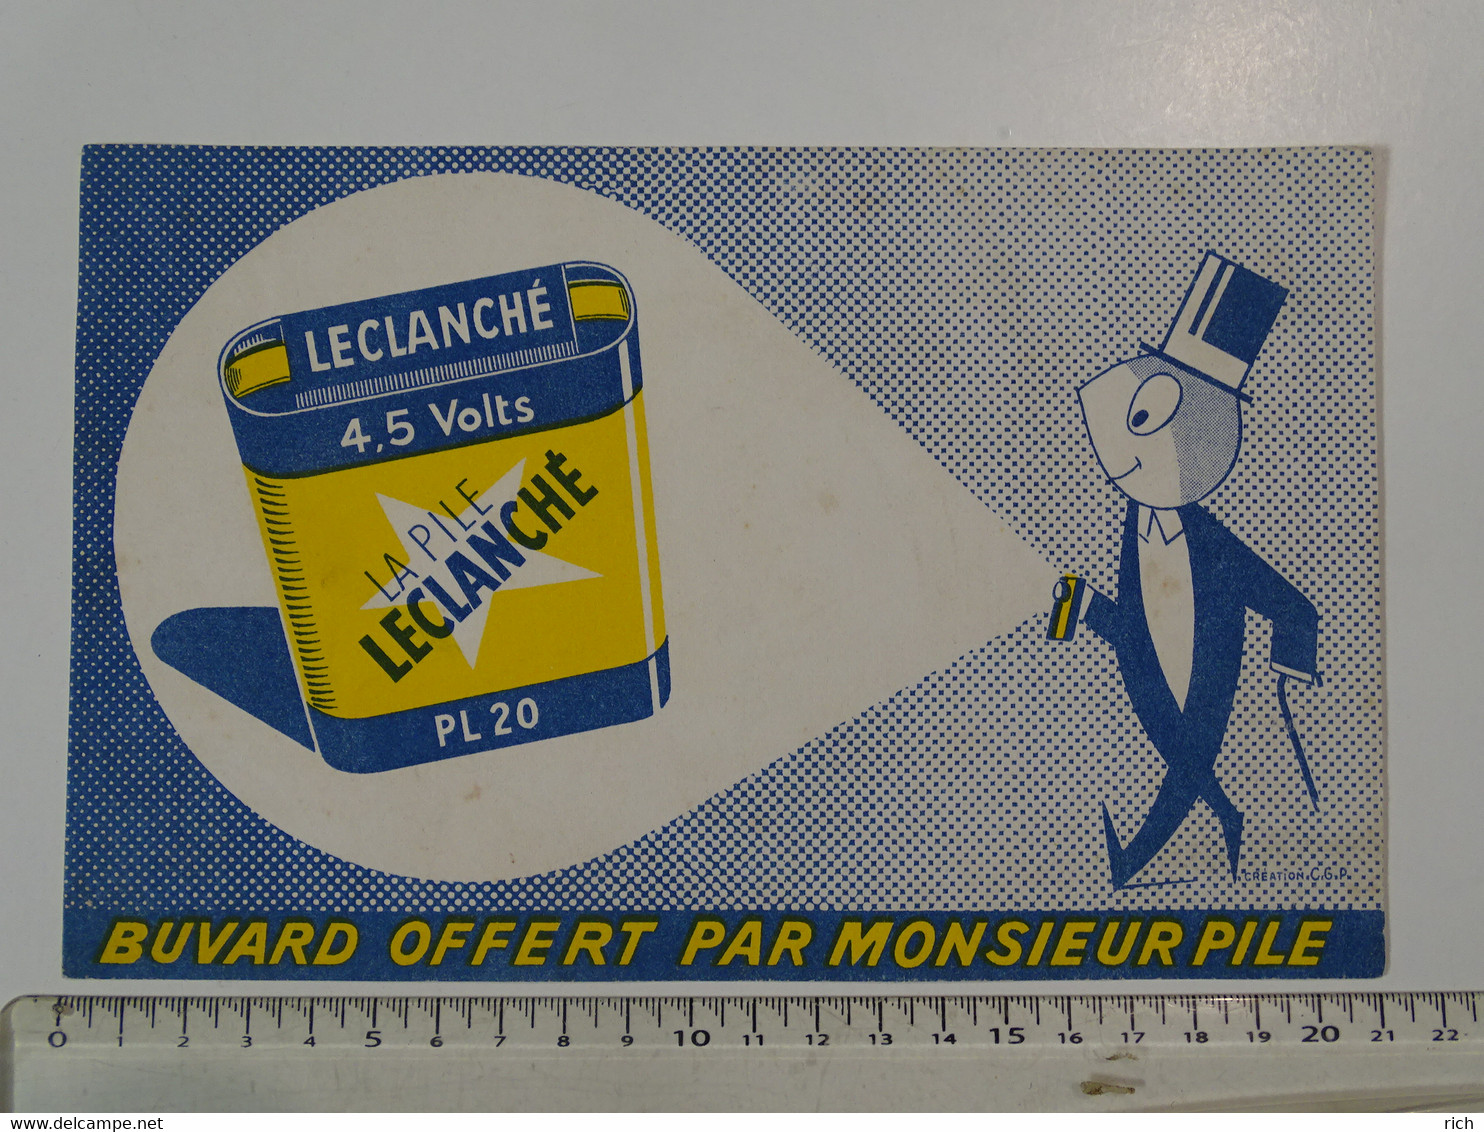 Buvard - Buvard Offert Par Monsieur Pile - La Pile Leclanché - Piles